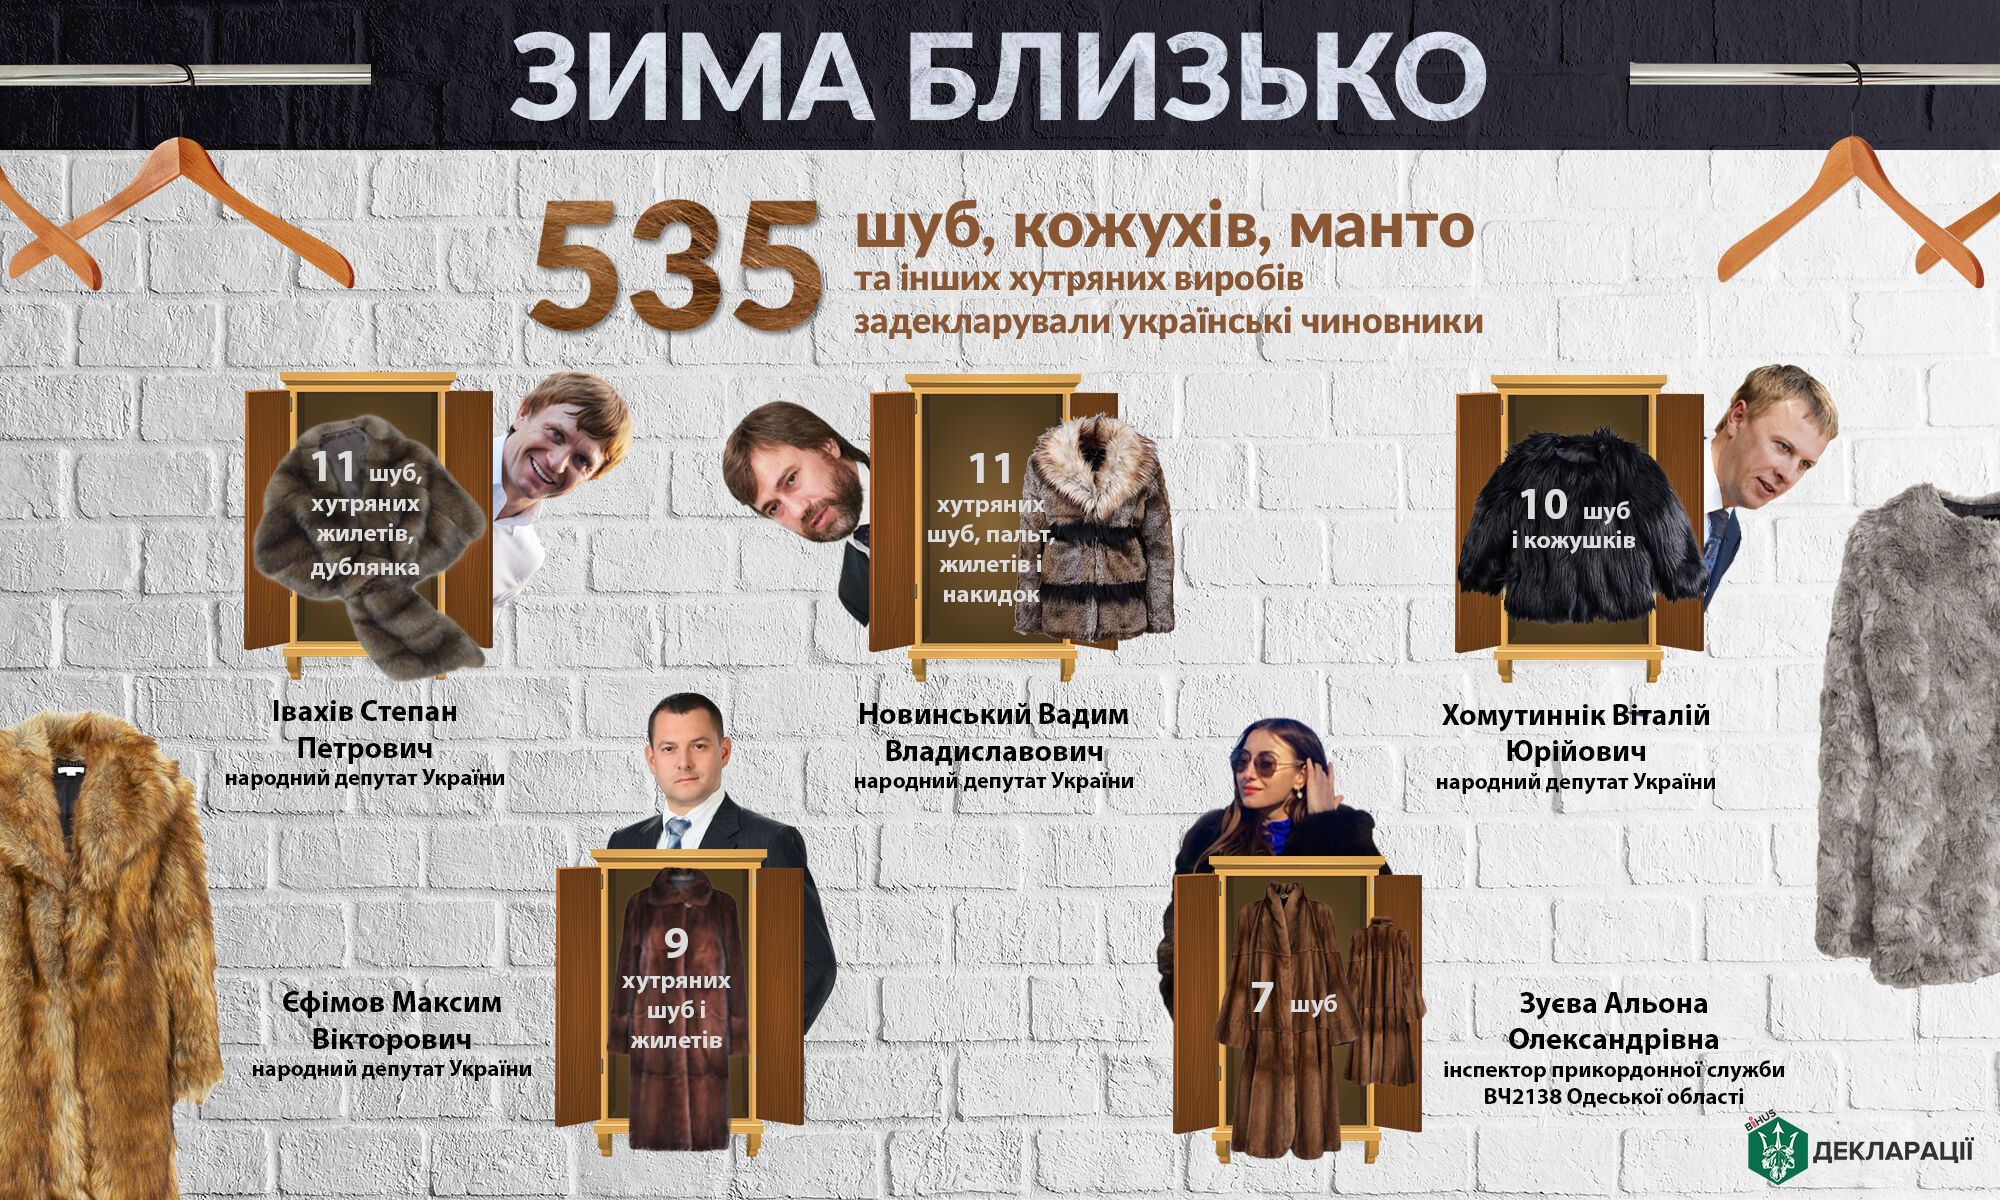 "Зима близко": опубликован рейтинг шуб украинских чиновников и депутатов